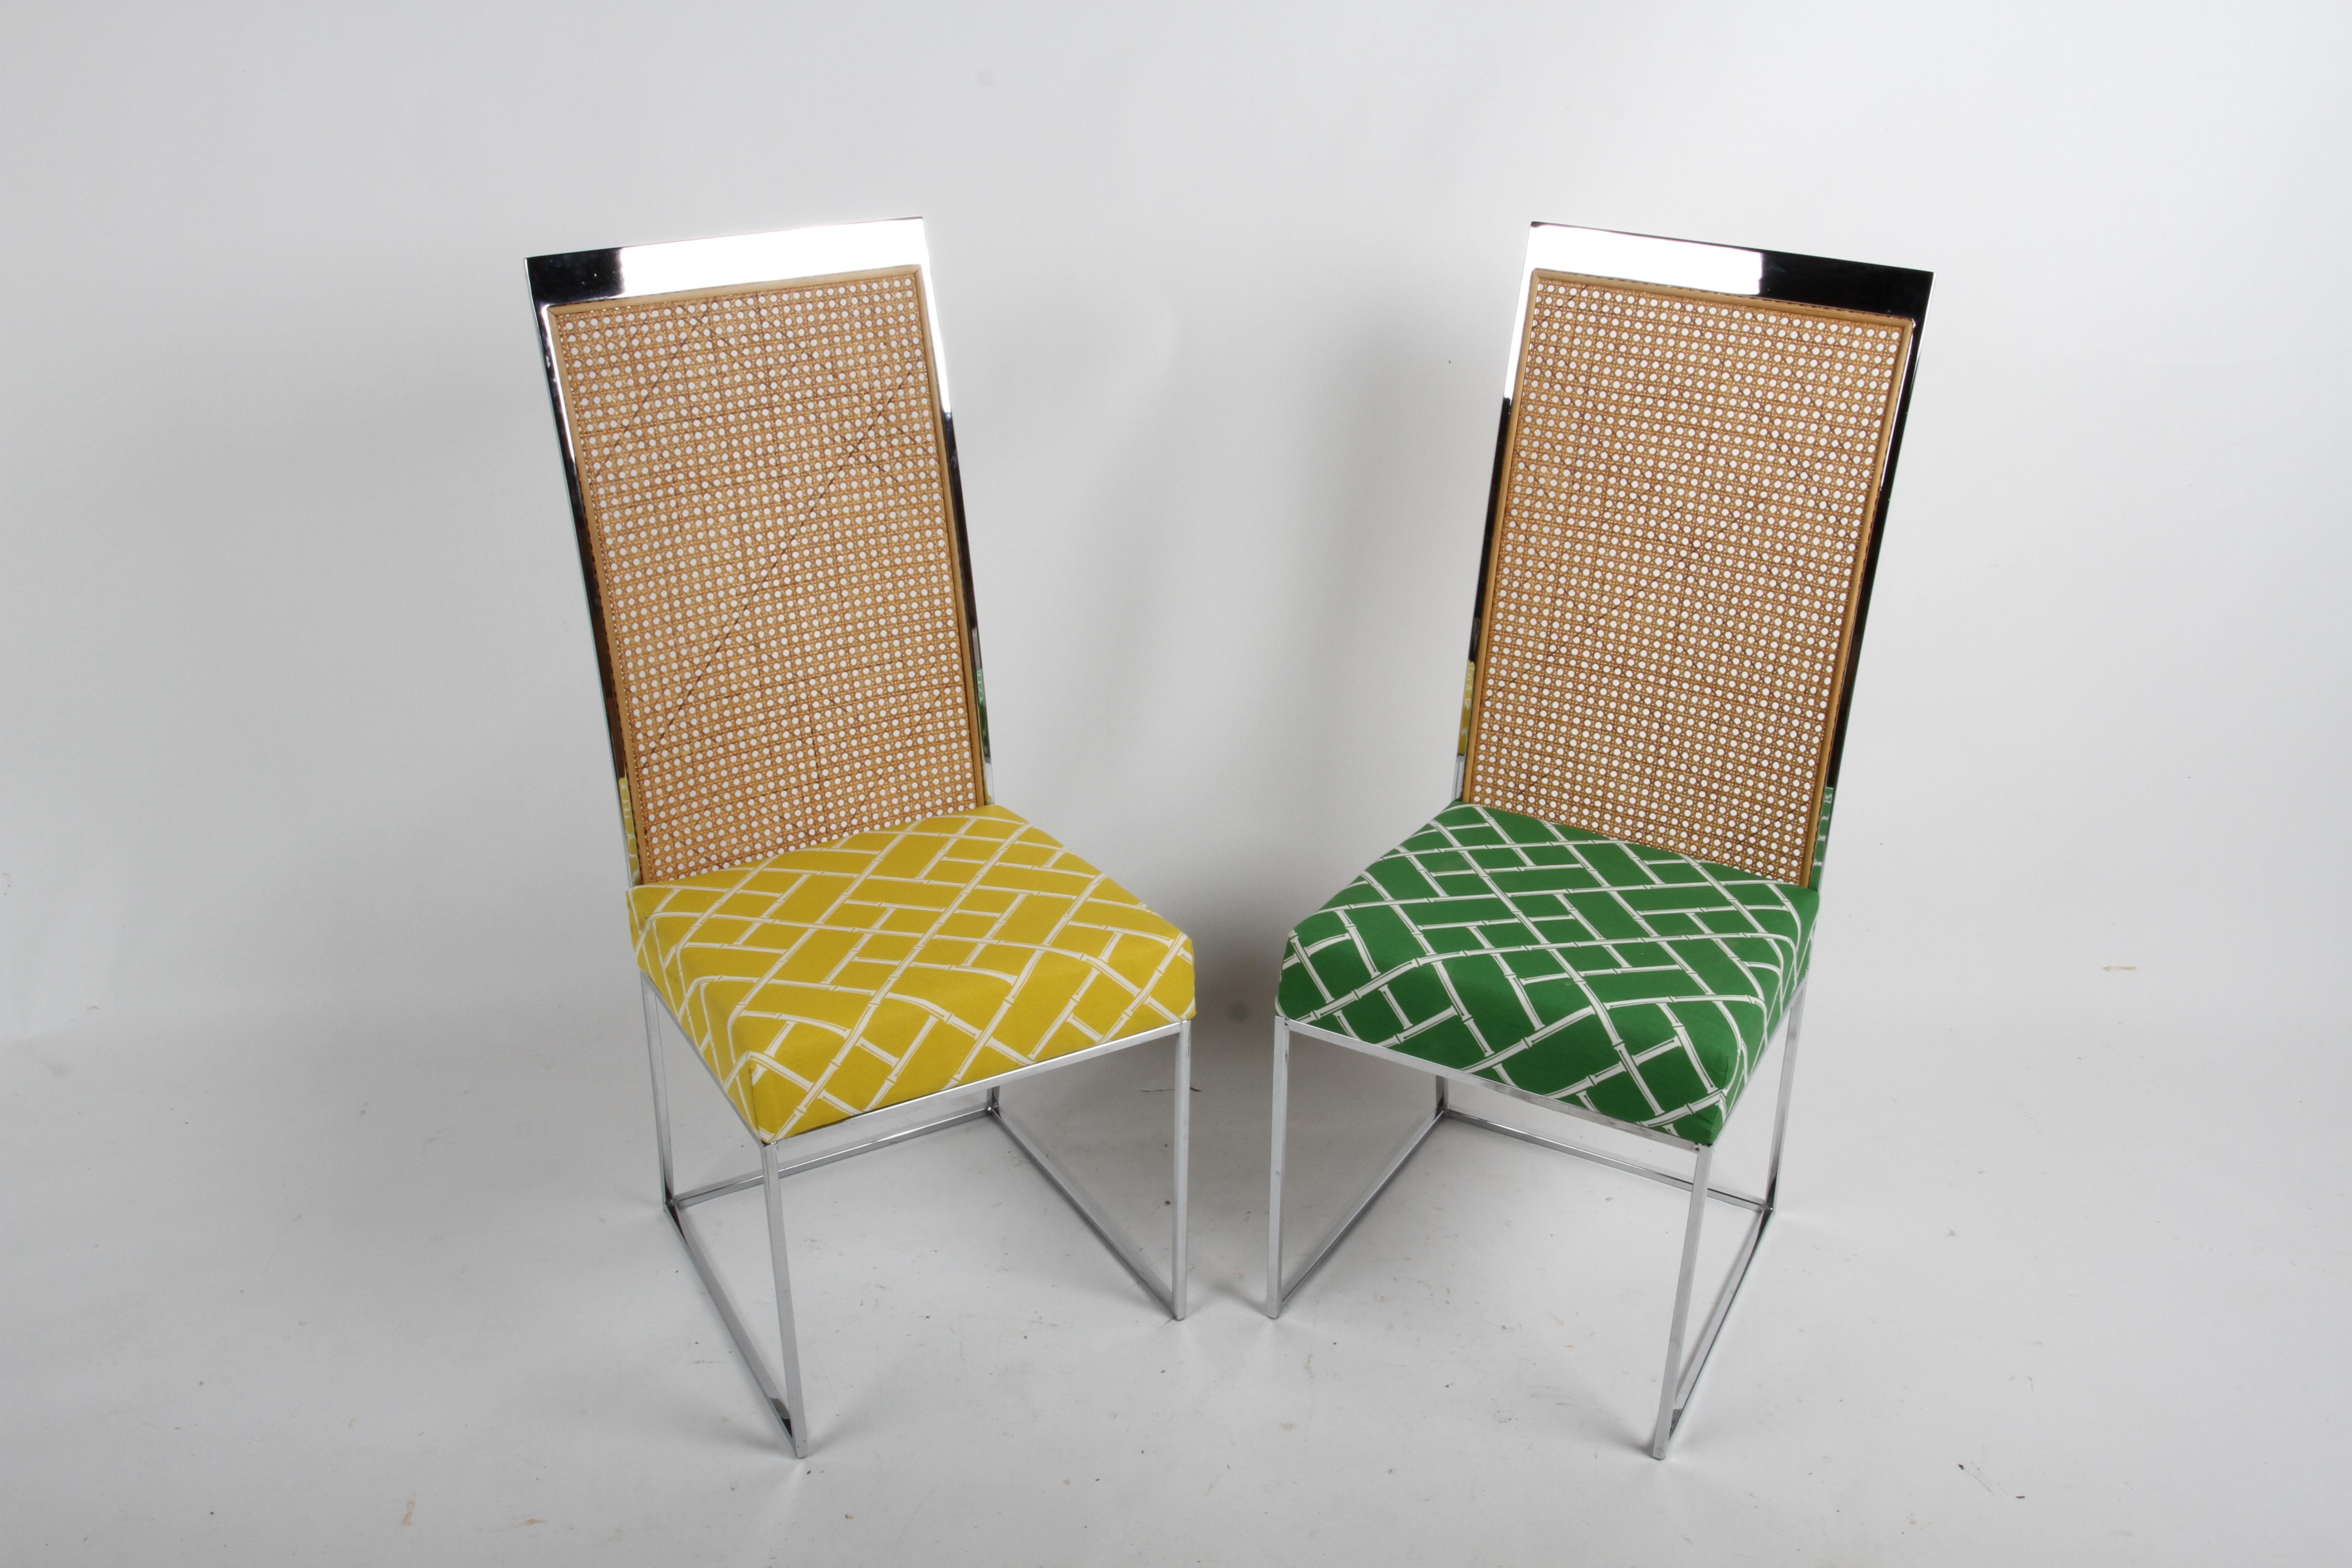 Elegantes Mid-Century Modern Set aus acht verchromten Stühlen mit Rohrrücken, entworfen von Milo Baughman für Thayer Coggin, ca. 1970er Jahre. Jeder Stuhl hat ein dünnes, einfaches Chromgestell mit hohen Rückenlehnen aus Rattan und gepolsterten